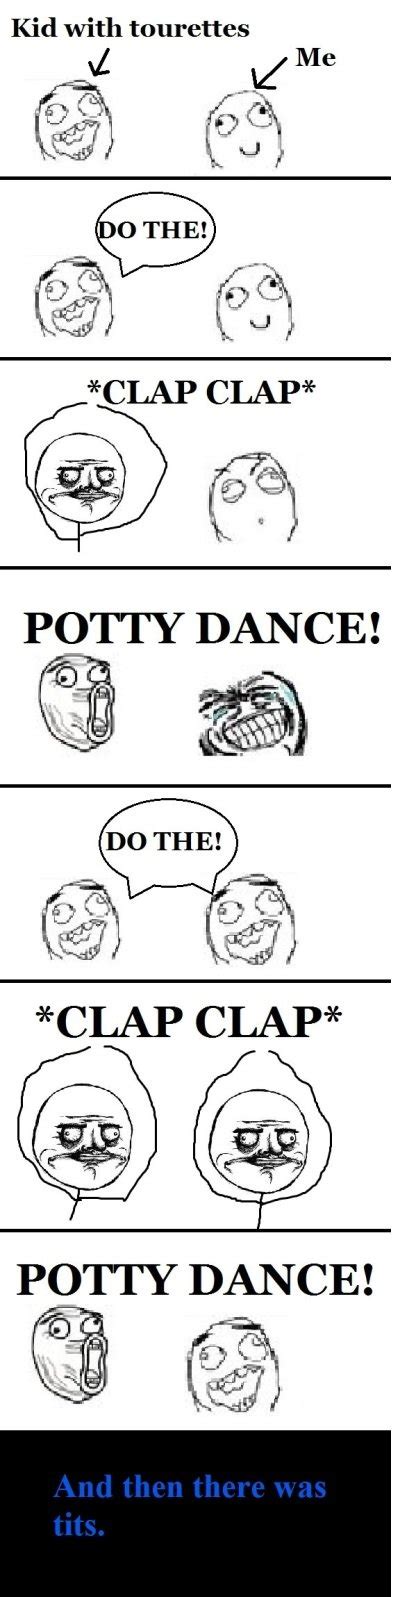 Do The Potty Dance